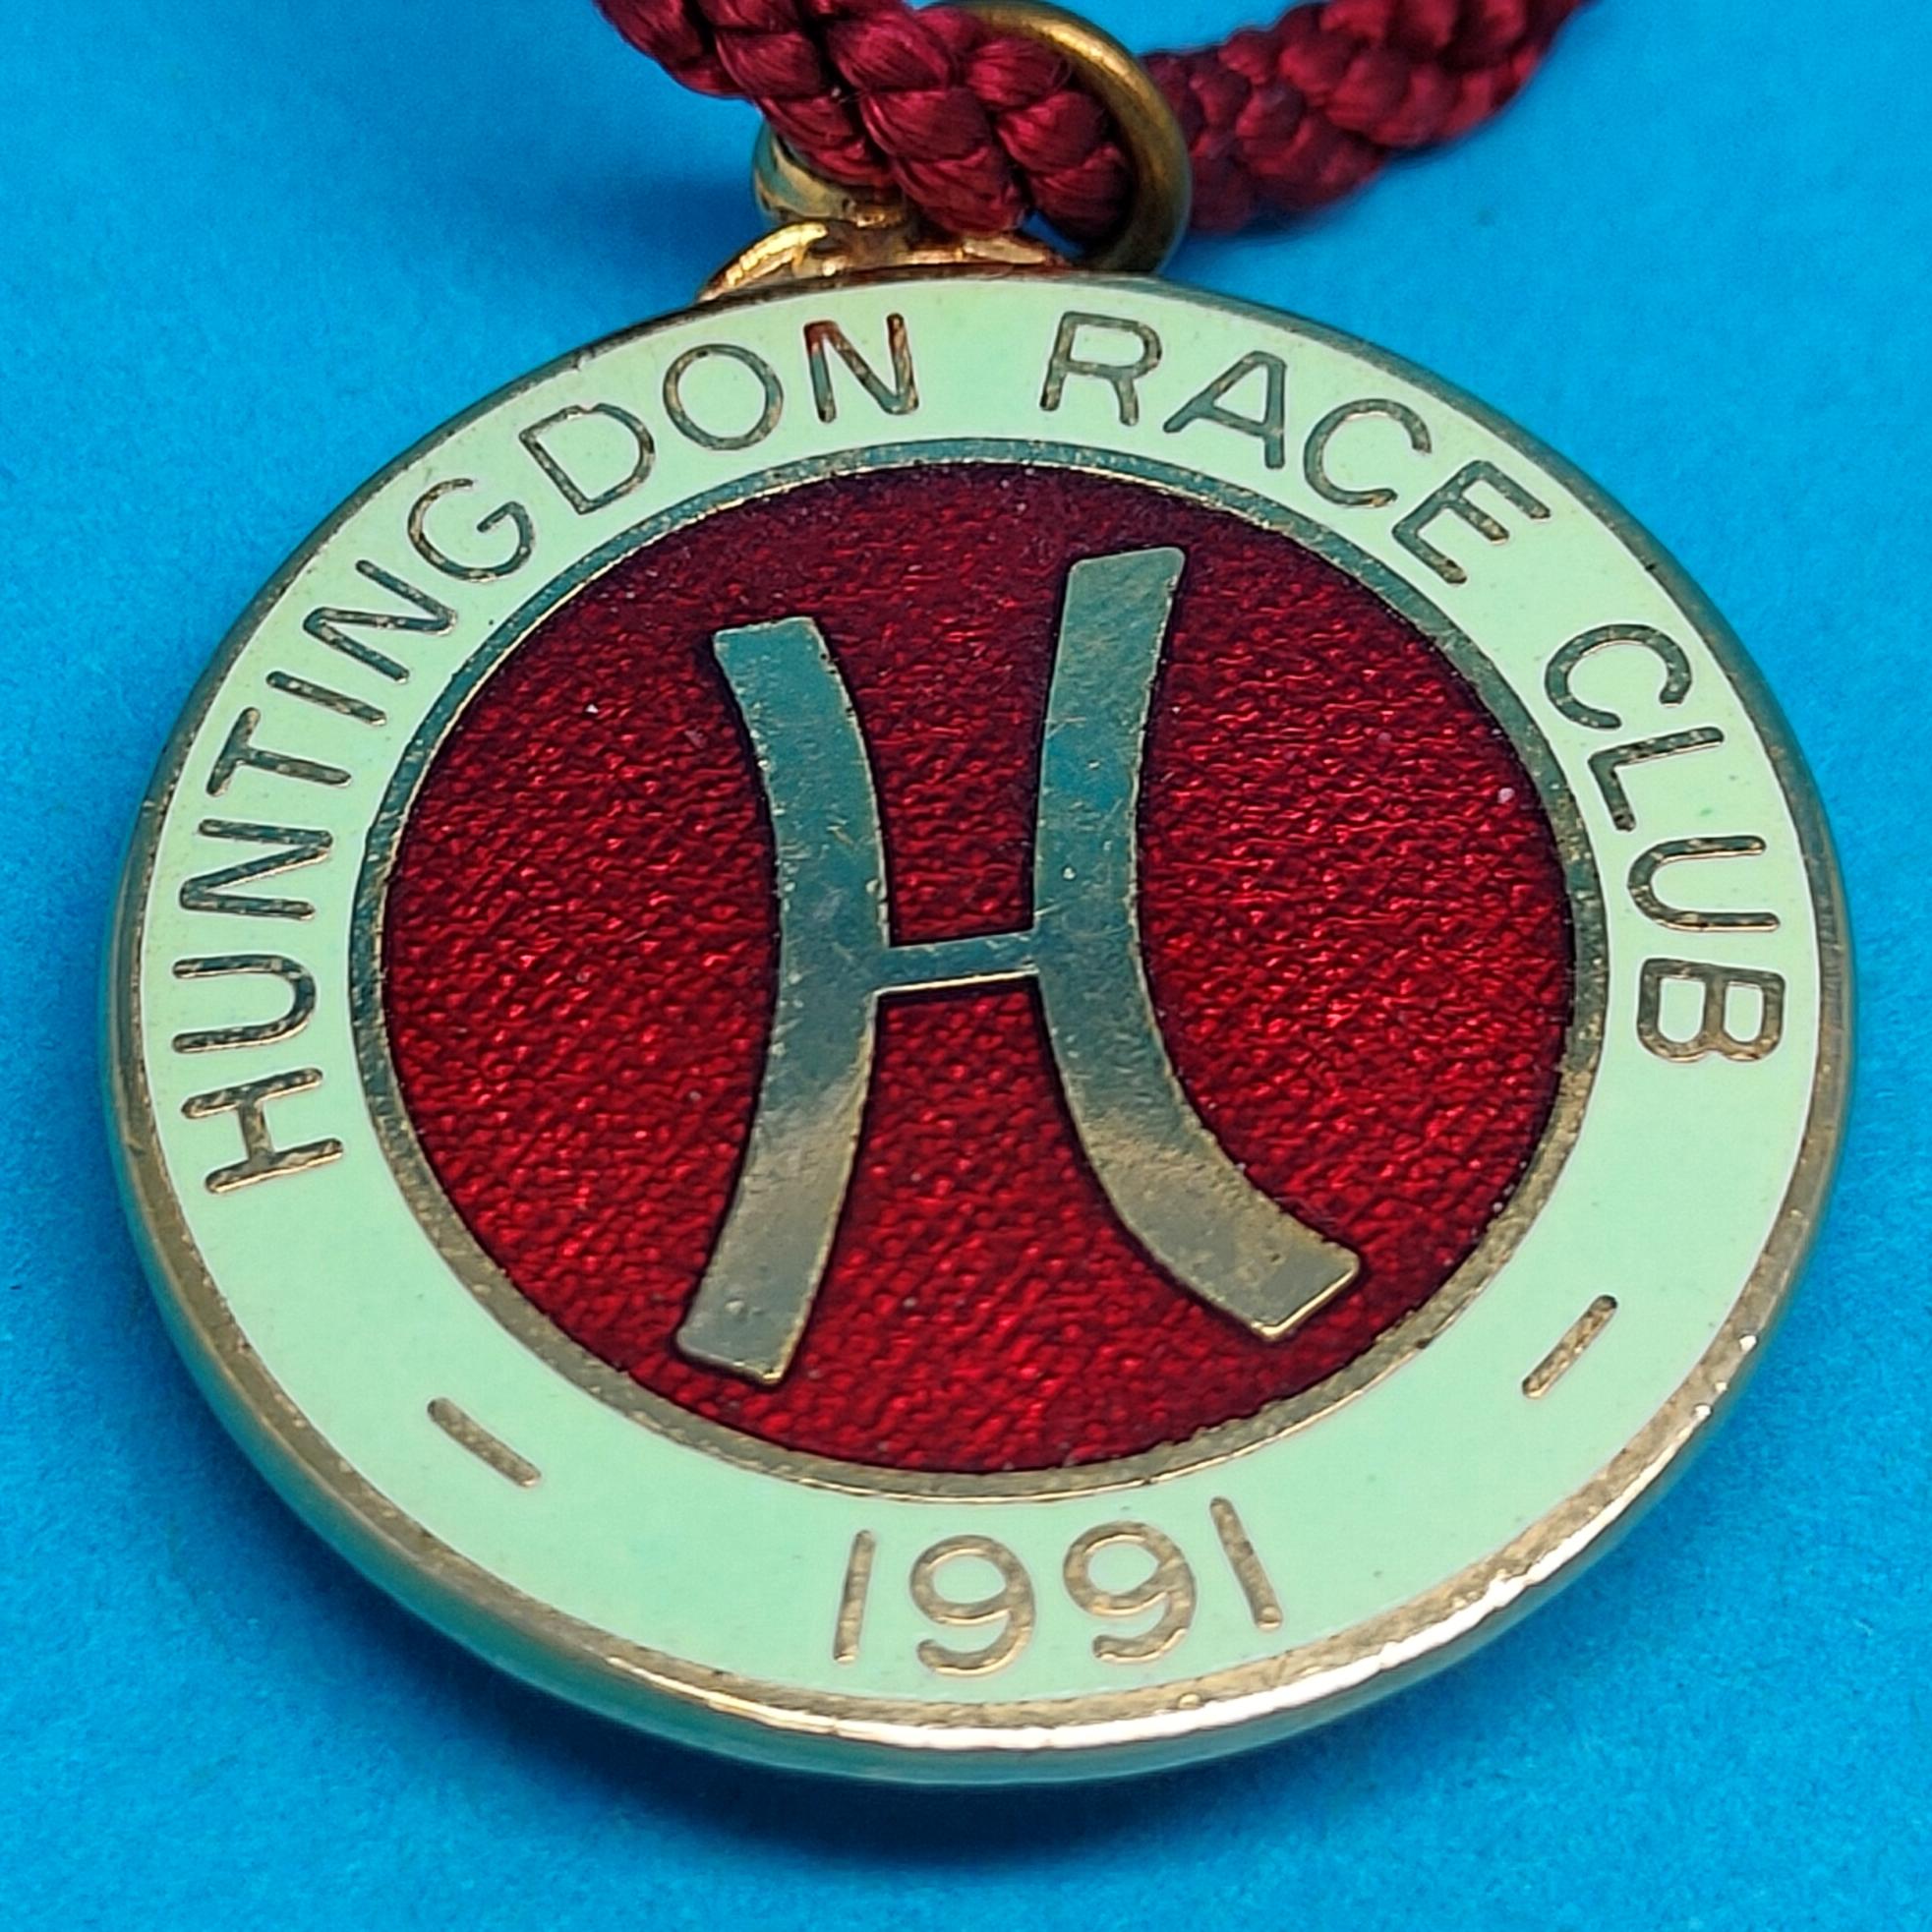 Huntingdon 1991